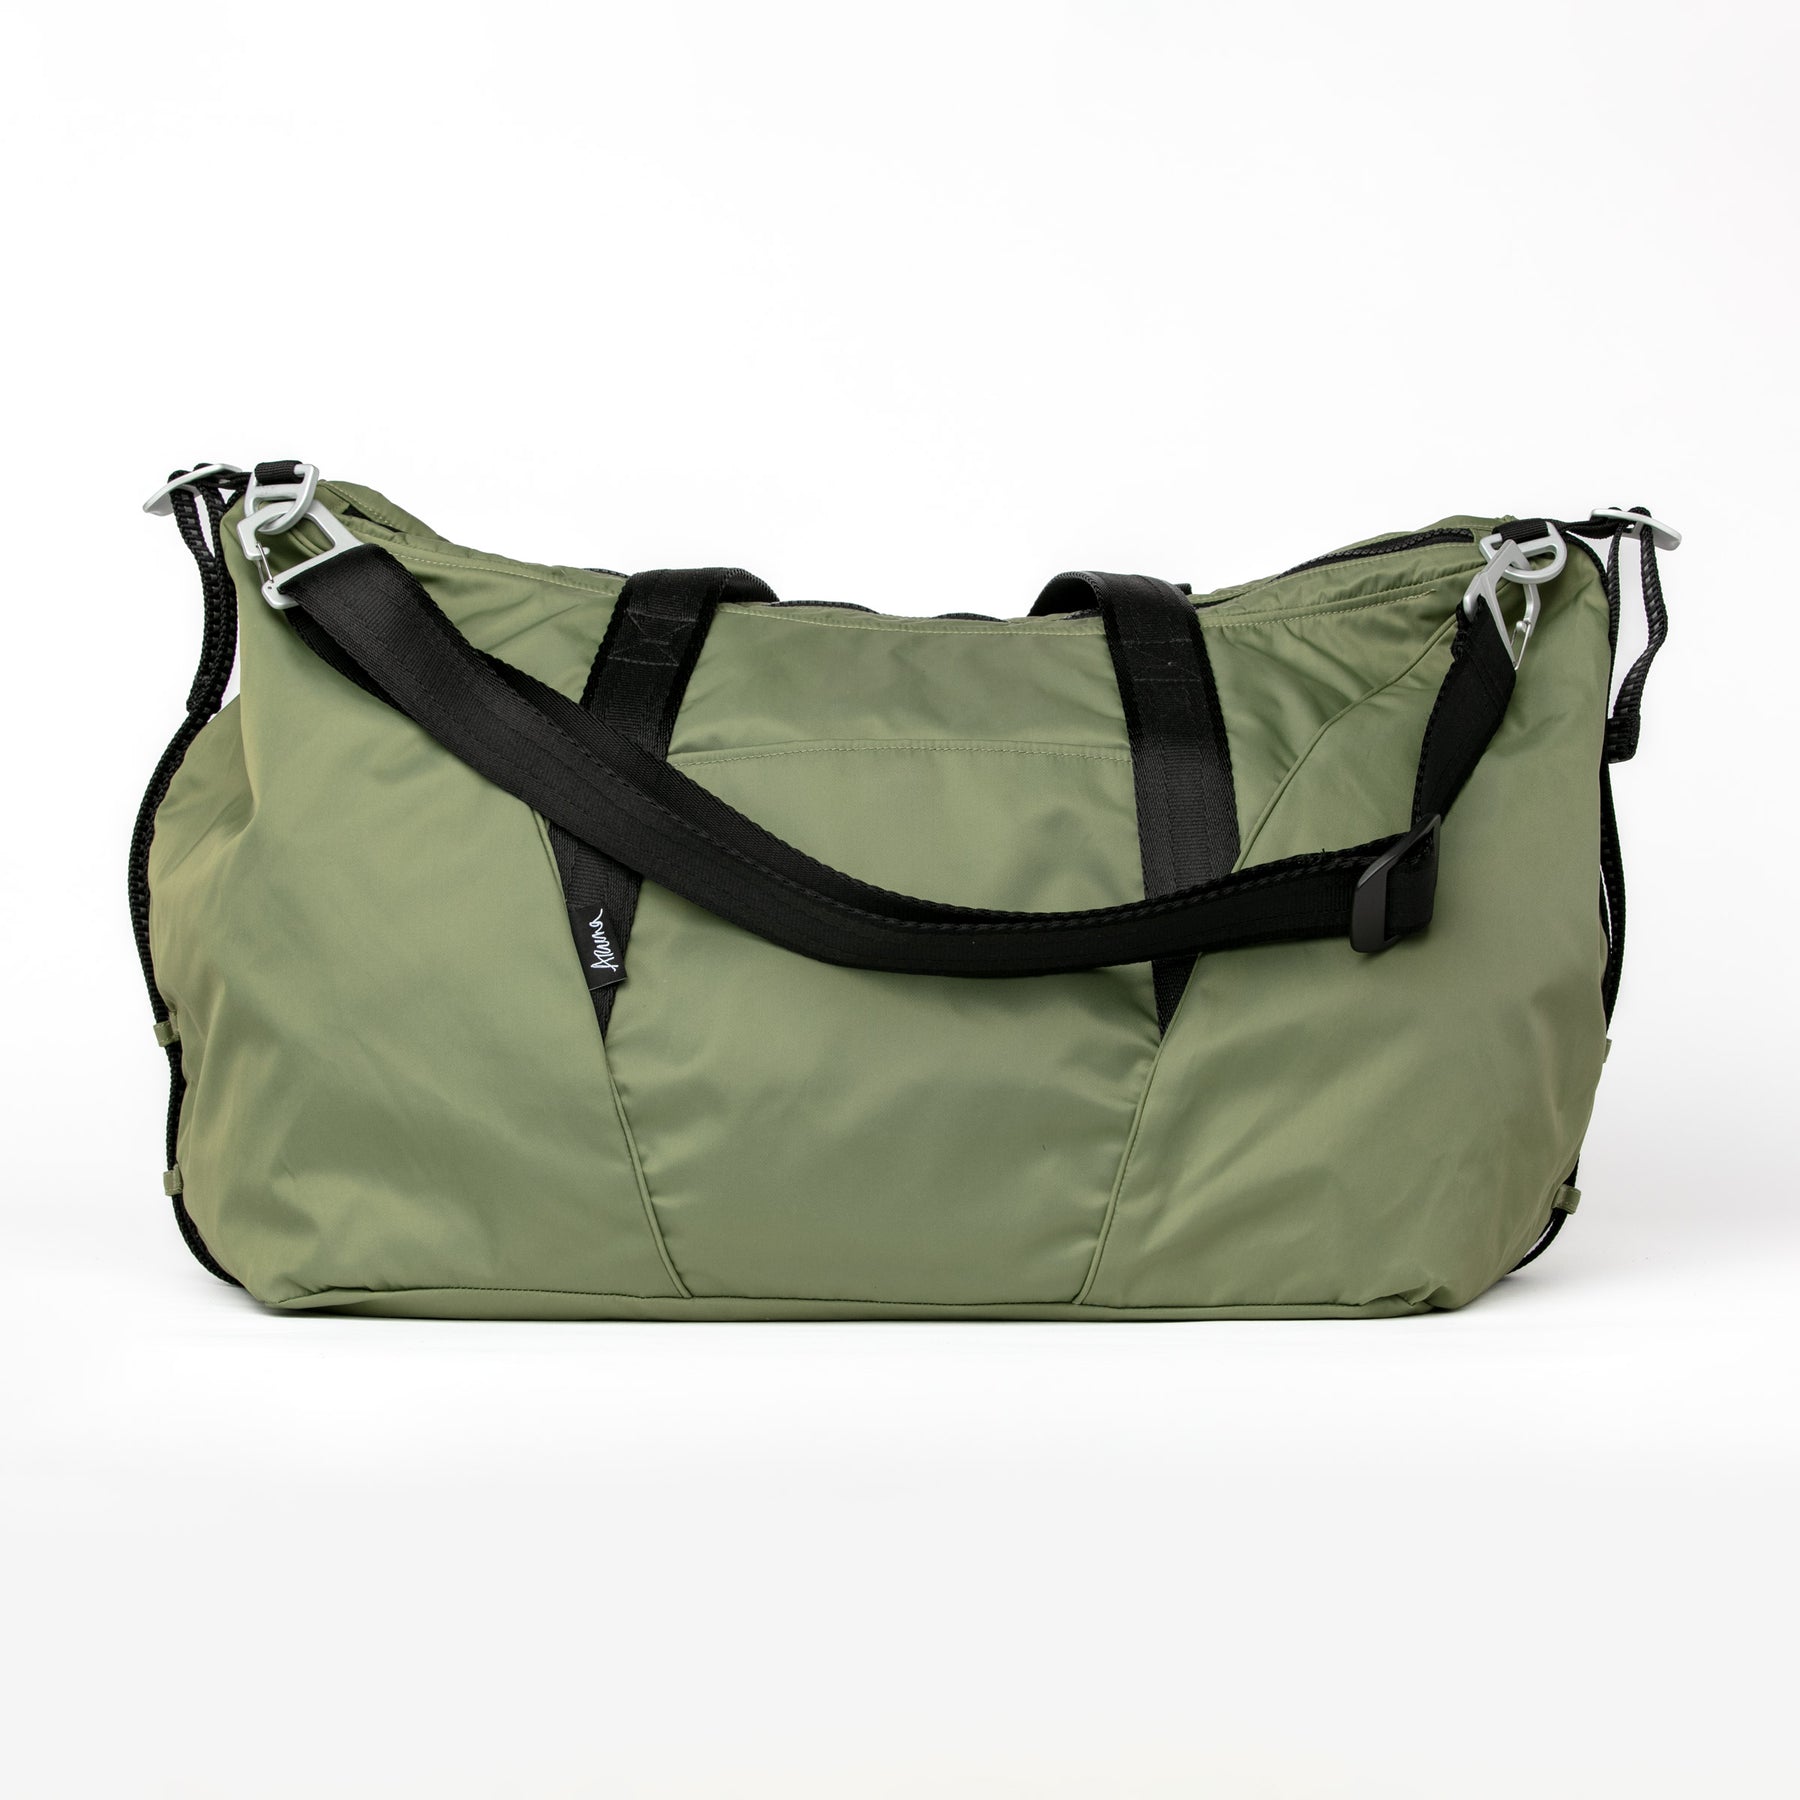 Aruna Women's Large Travel Duffel/Weekender Bag, 35L, Water-resistant ...